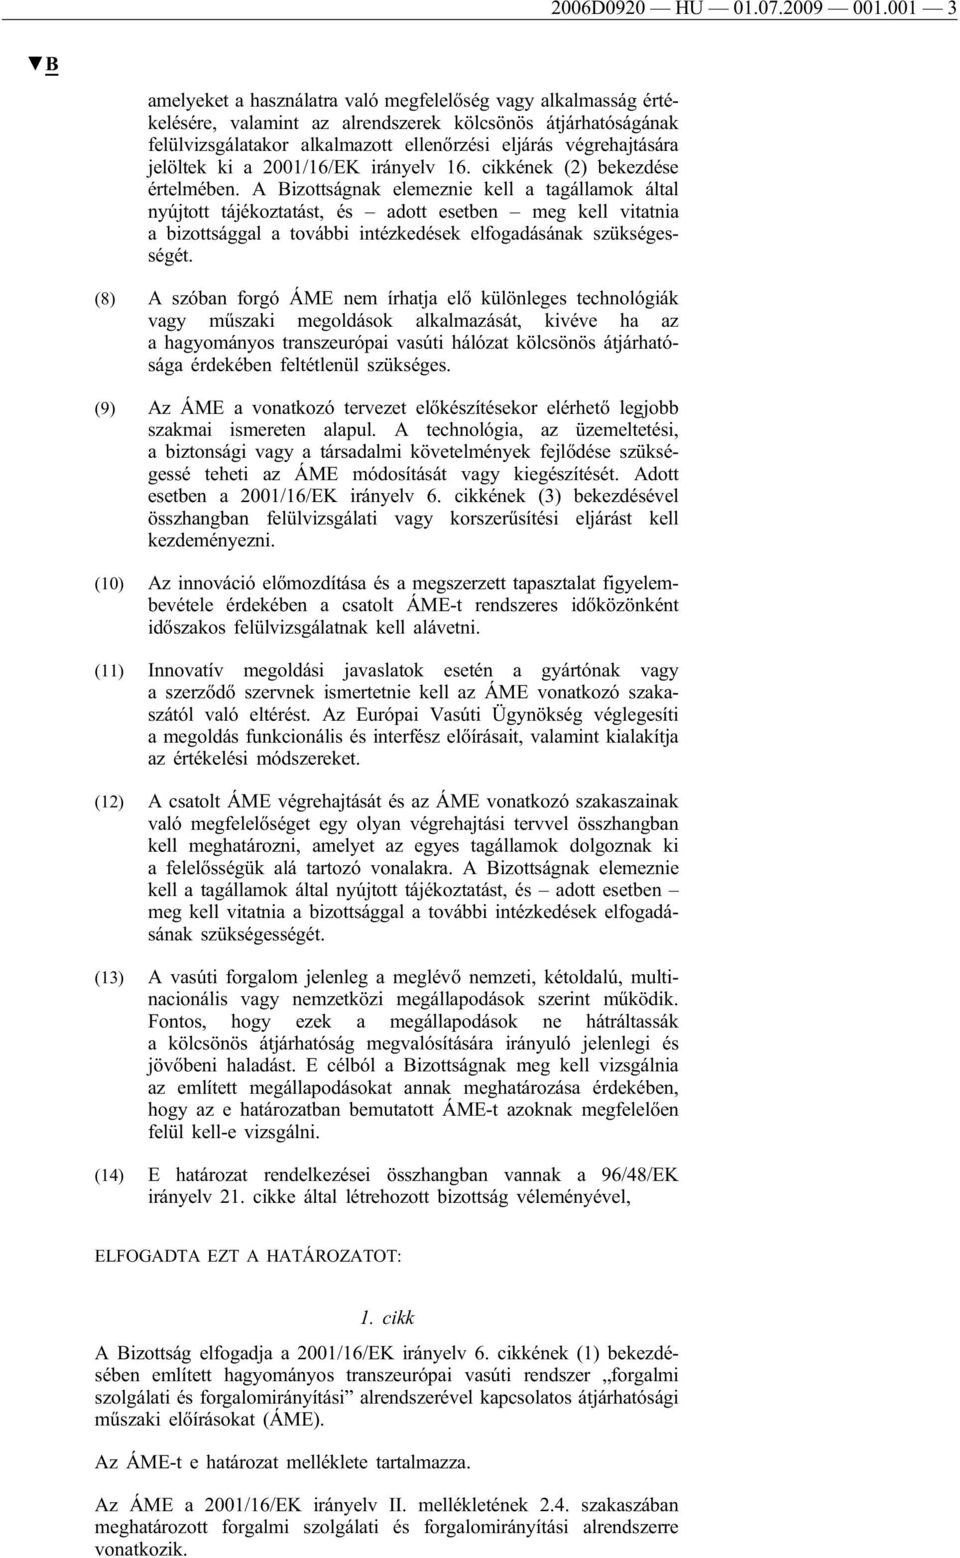 jelöltek ki a 2001/16/EK irányelv 16. cikkének (2) bekezdése értelmében.